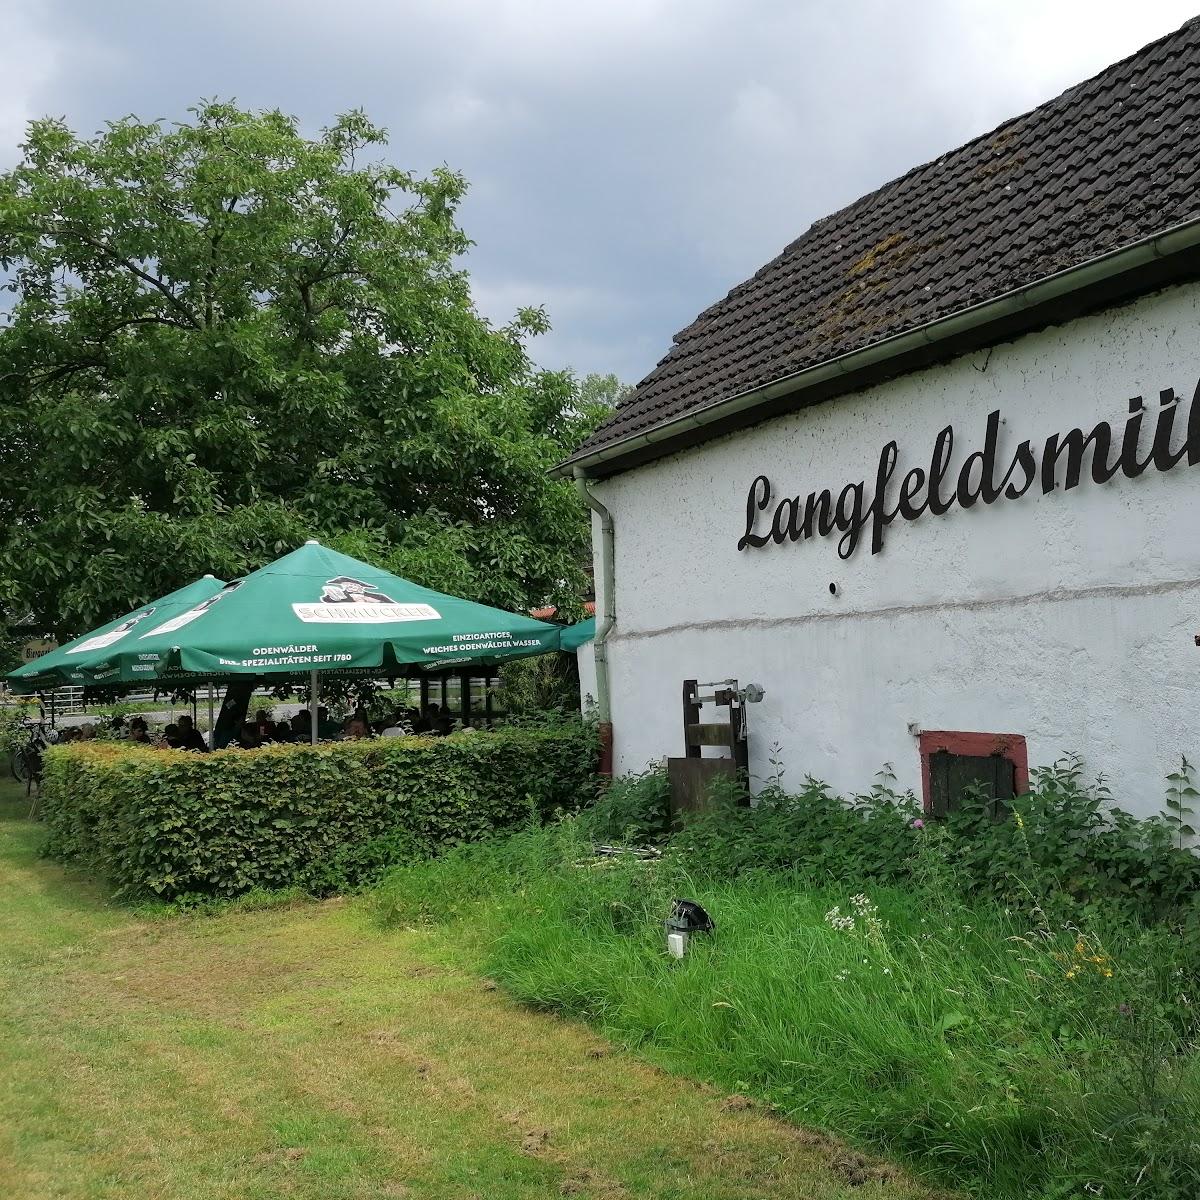 Restaurant "Langfeldsmühle" in Babenhausen